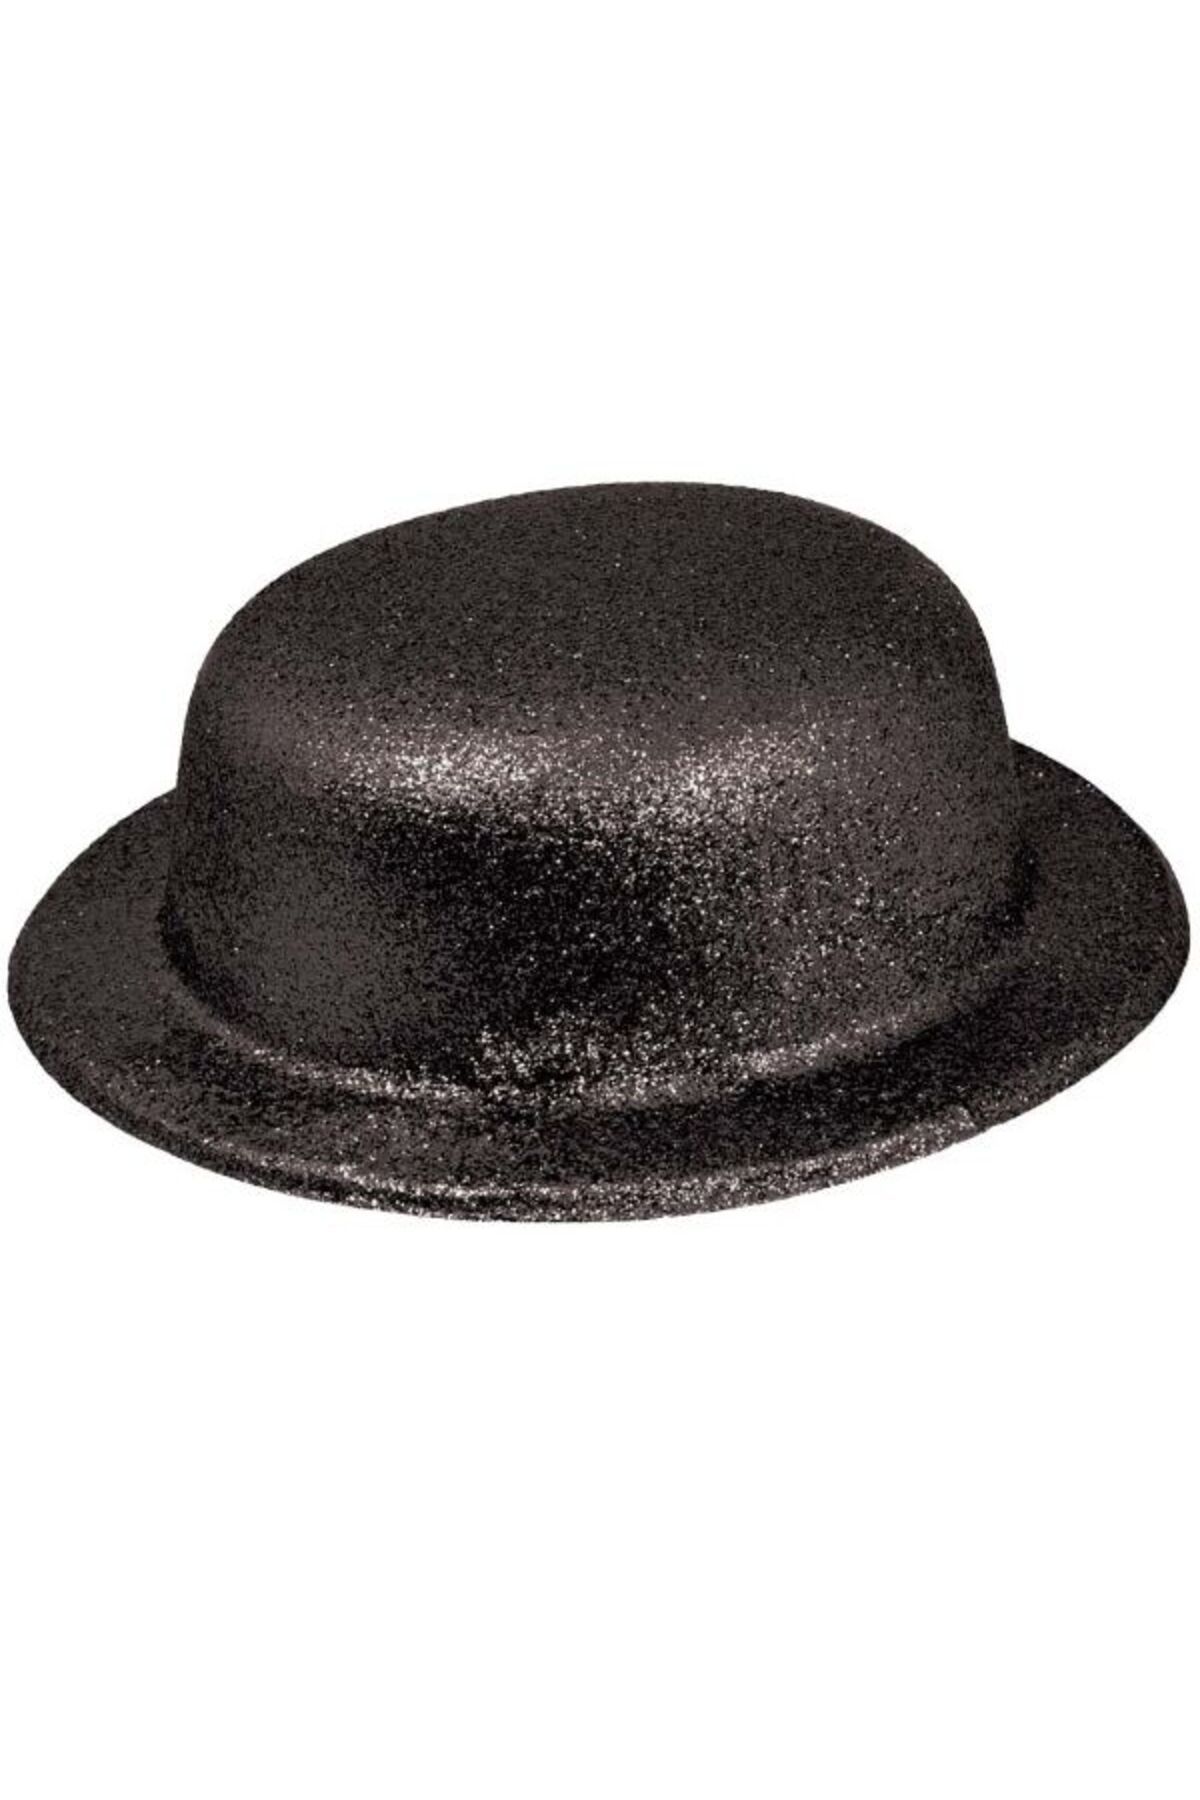 HİMARRY Himarry Siyah Renk Yuvarlak Simli Plastik Parti Şapkası